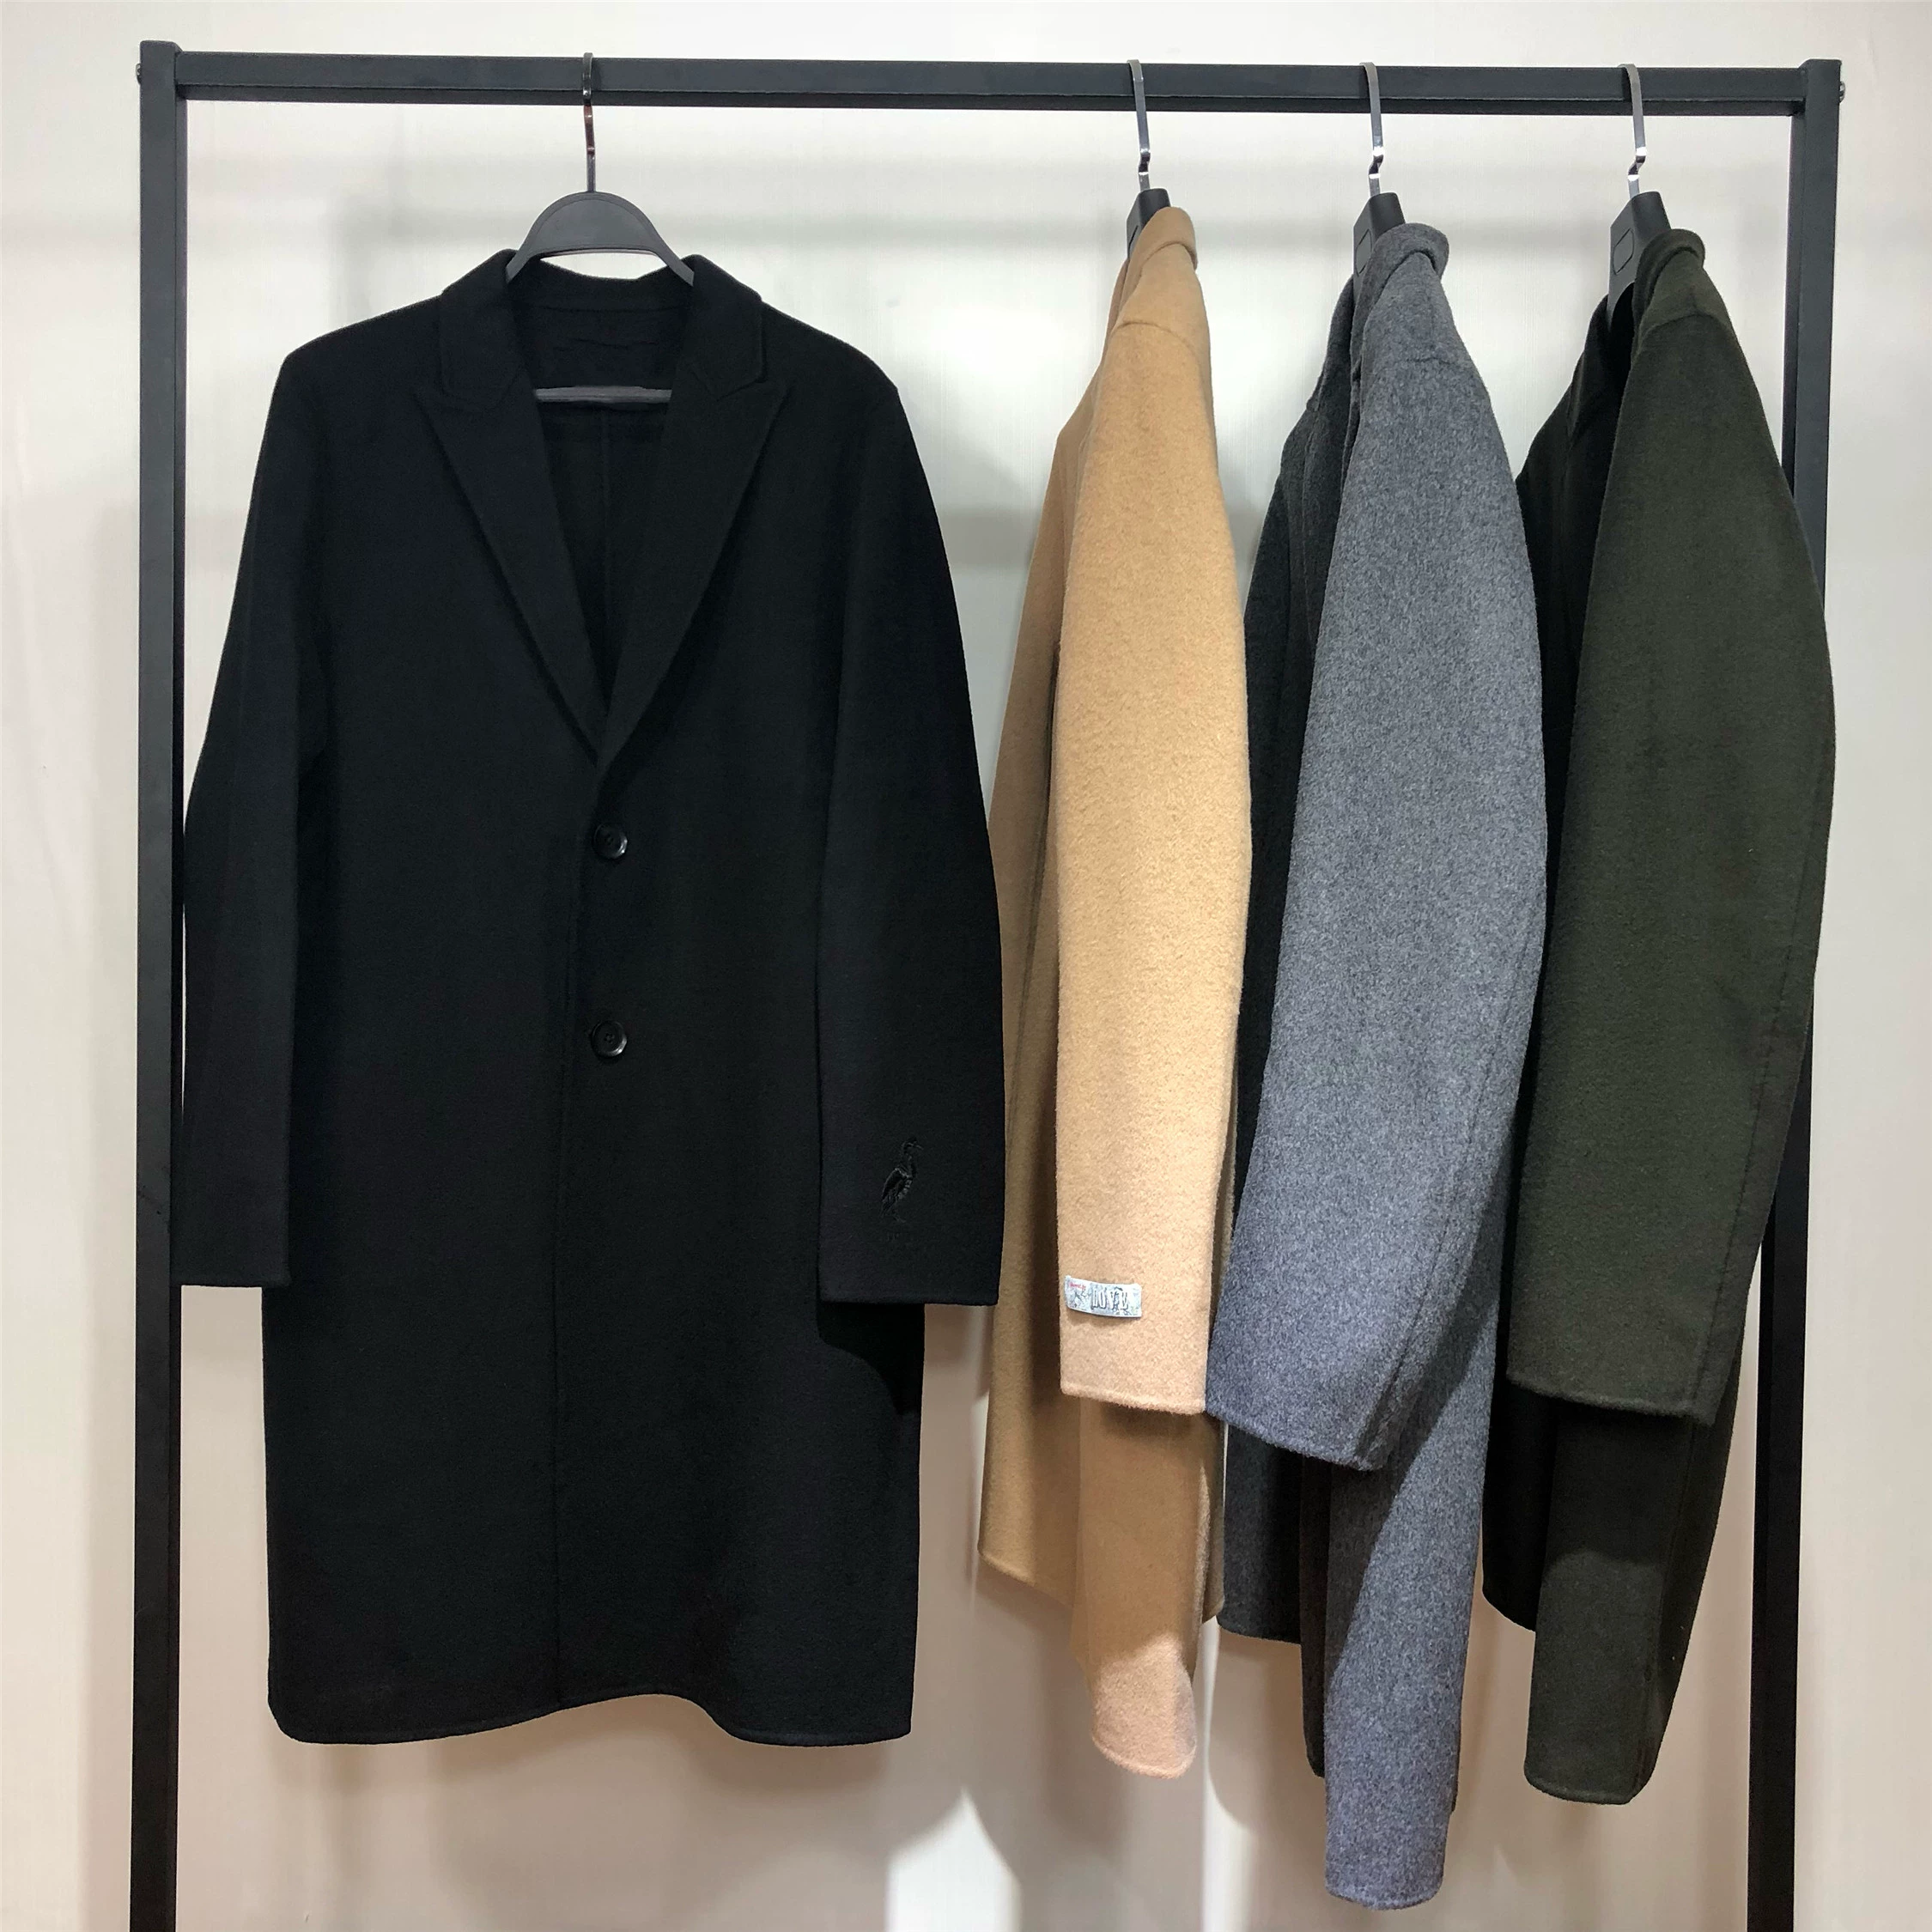 Áo khoác len hai mặt màu đen nam BWAA mùa thu và mùa đông Hàn Quốc phiên bản áo len dài thời trang len 8434 - Áo len